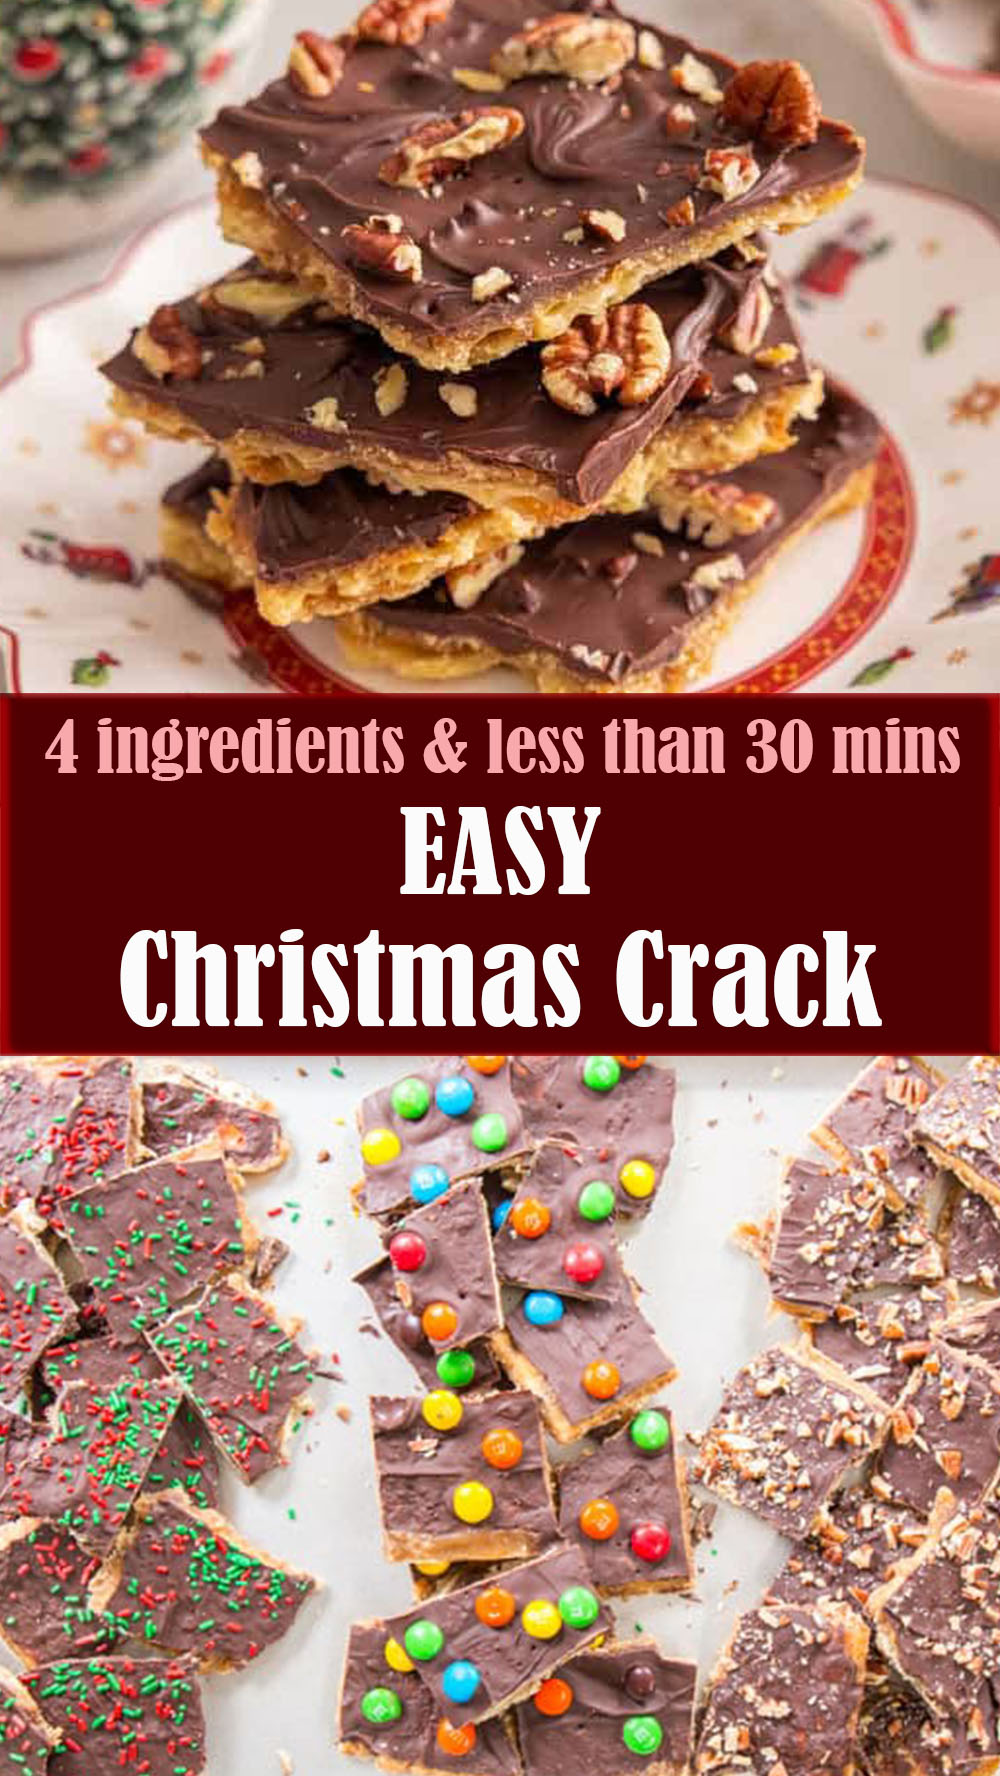 Easy Christmas Crack Recipe